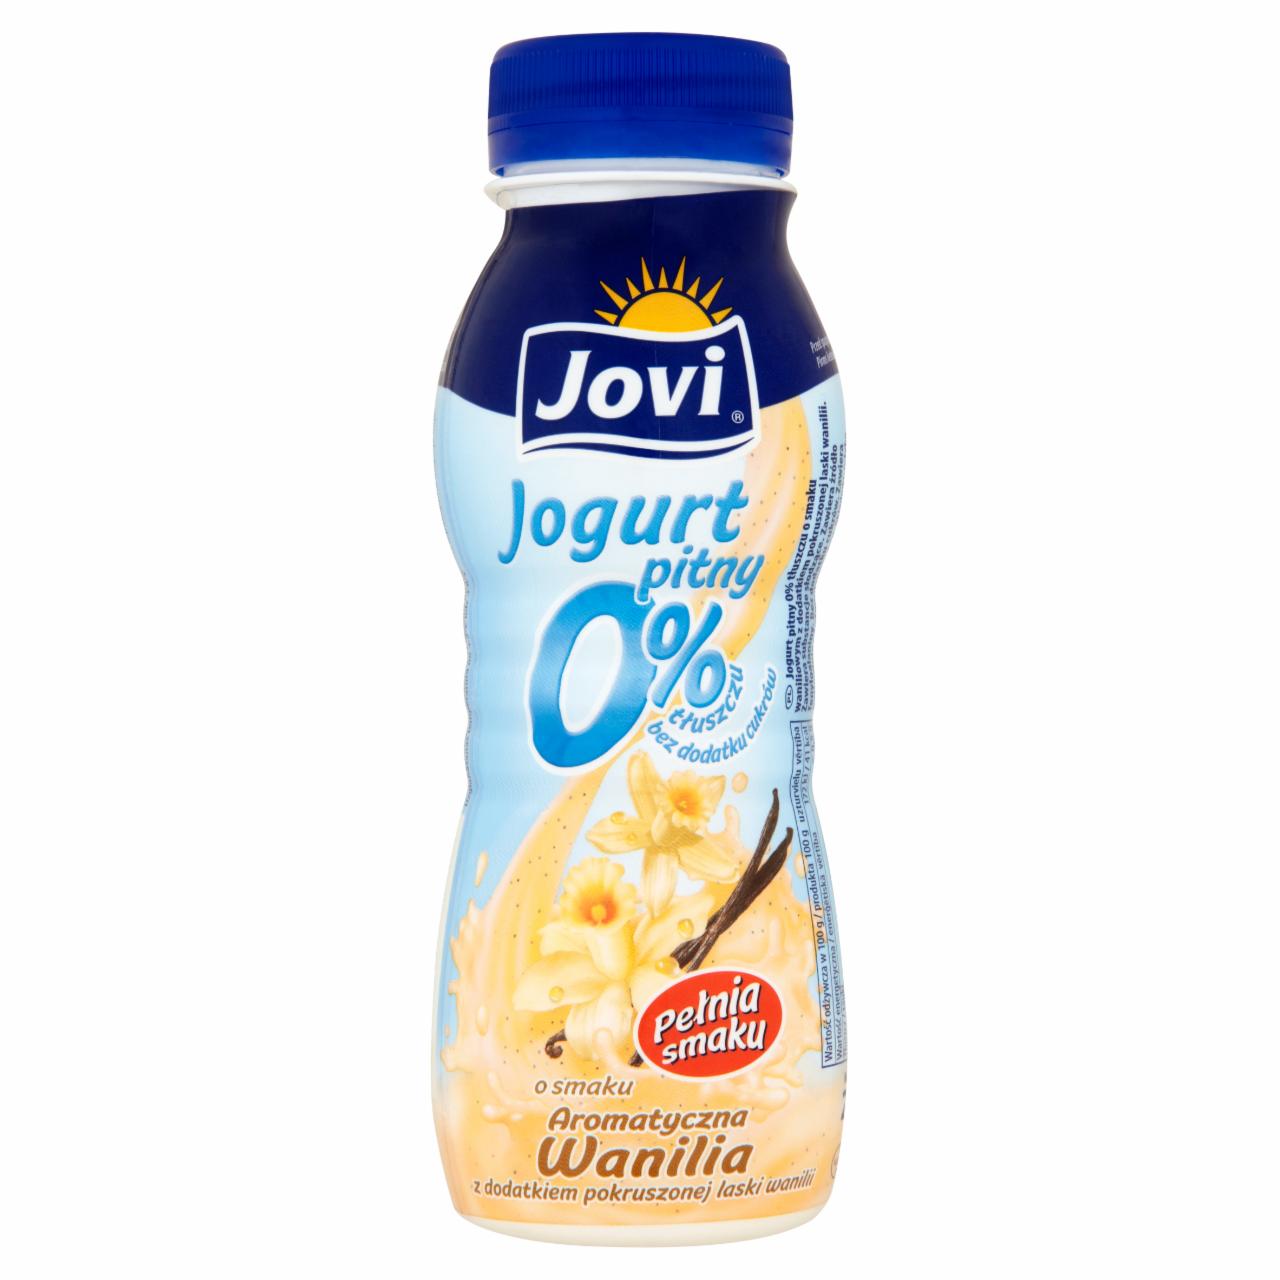 Zdjęcia - Jovi Jogurt pitny 0% o smaku aromatyczna wanilia z dodatkiem pokruszonej laski wanilii 250 g